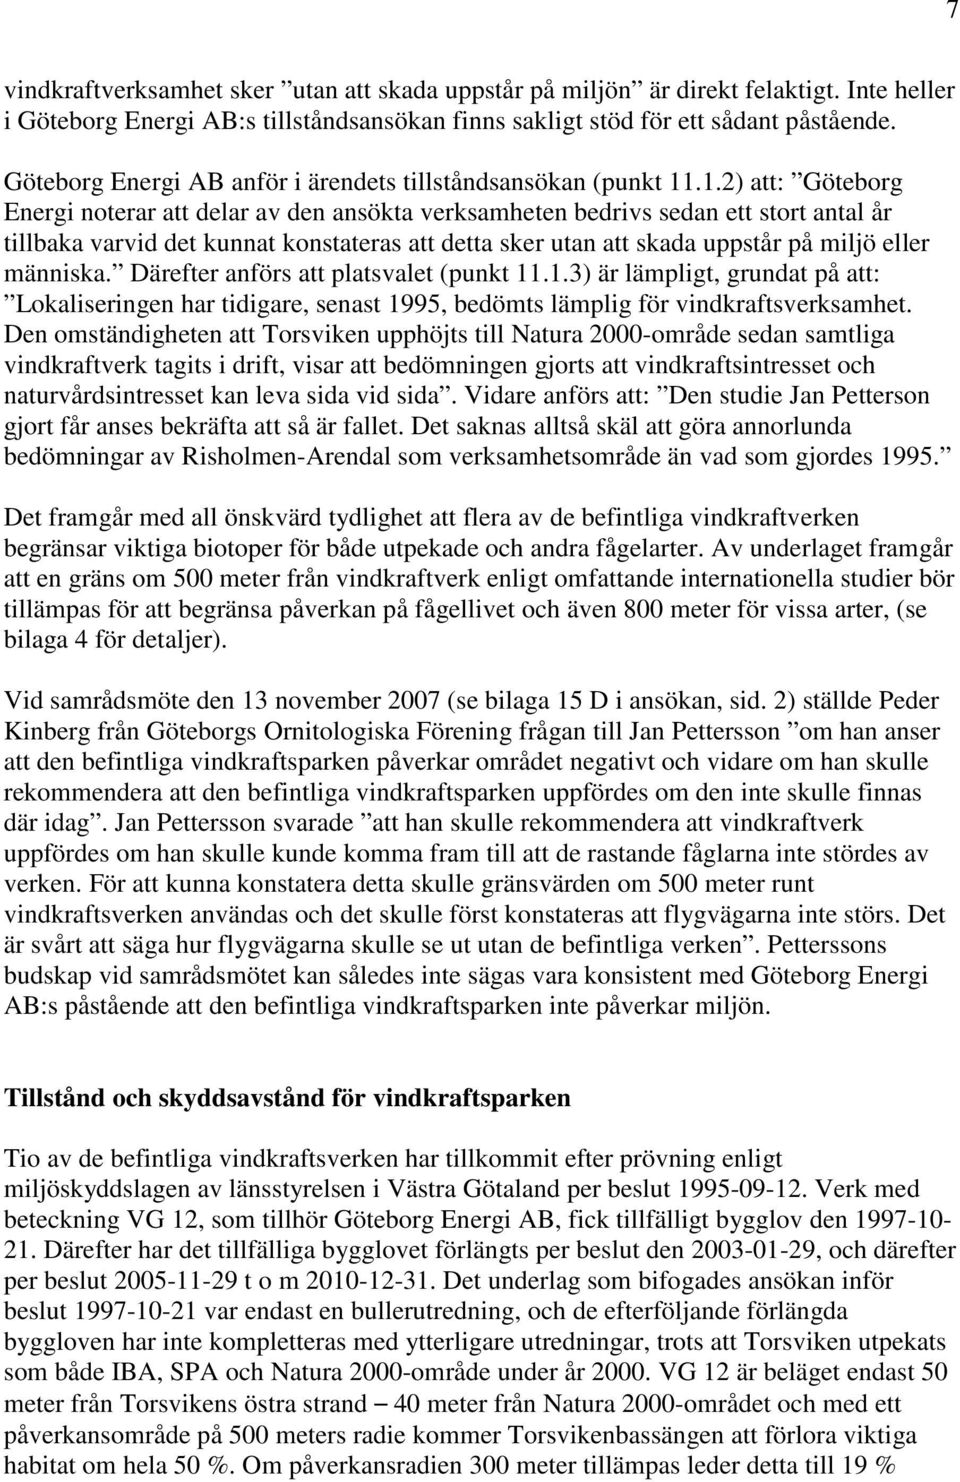 .1.2) att: Göteborg Energi noterar att delar av den ansökta verksamheten bedrivs sedan ett stort antal år tillbaka varvid det kunnat konstateras att detta sker utan att skada uppstår på miljö eller